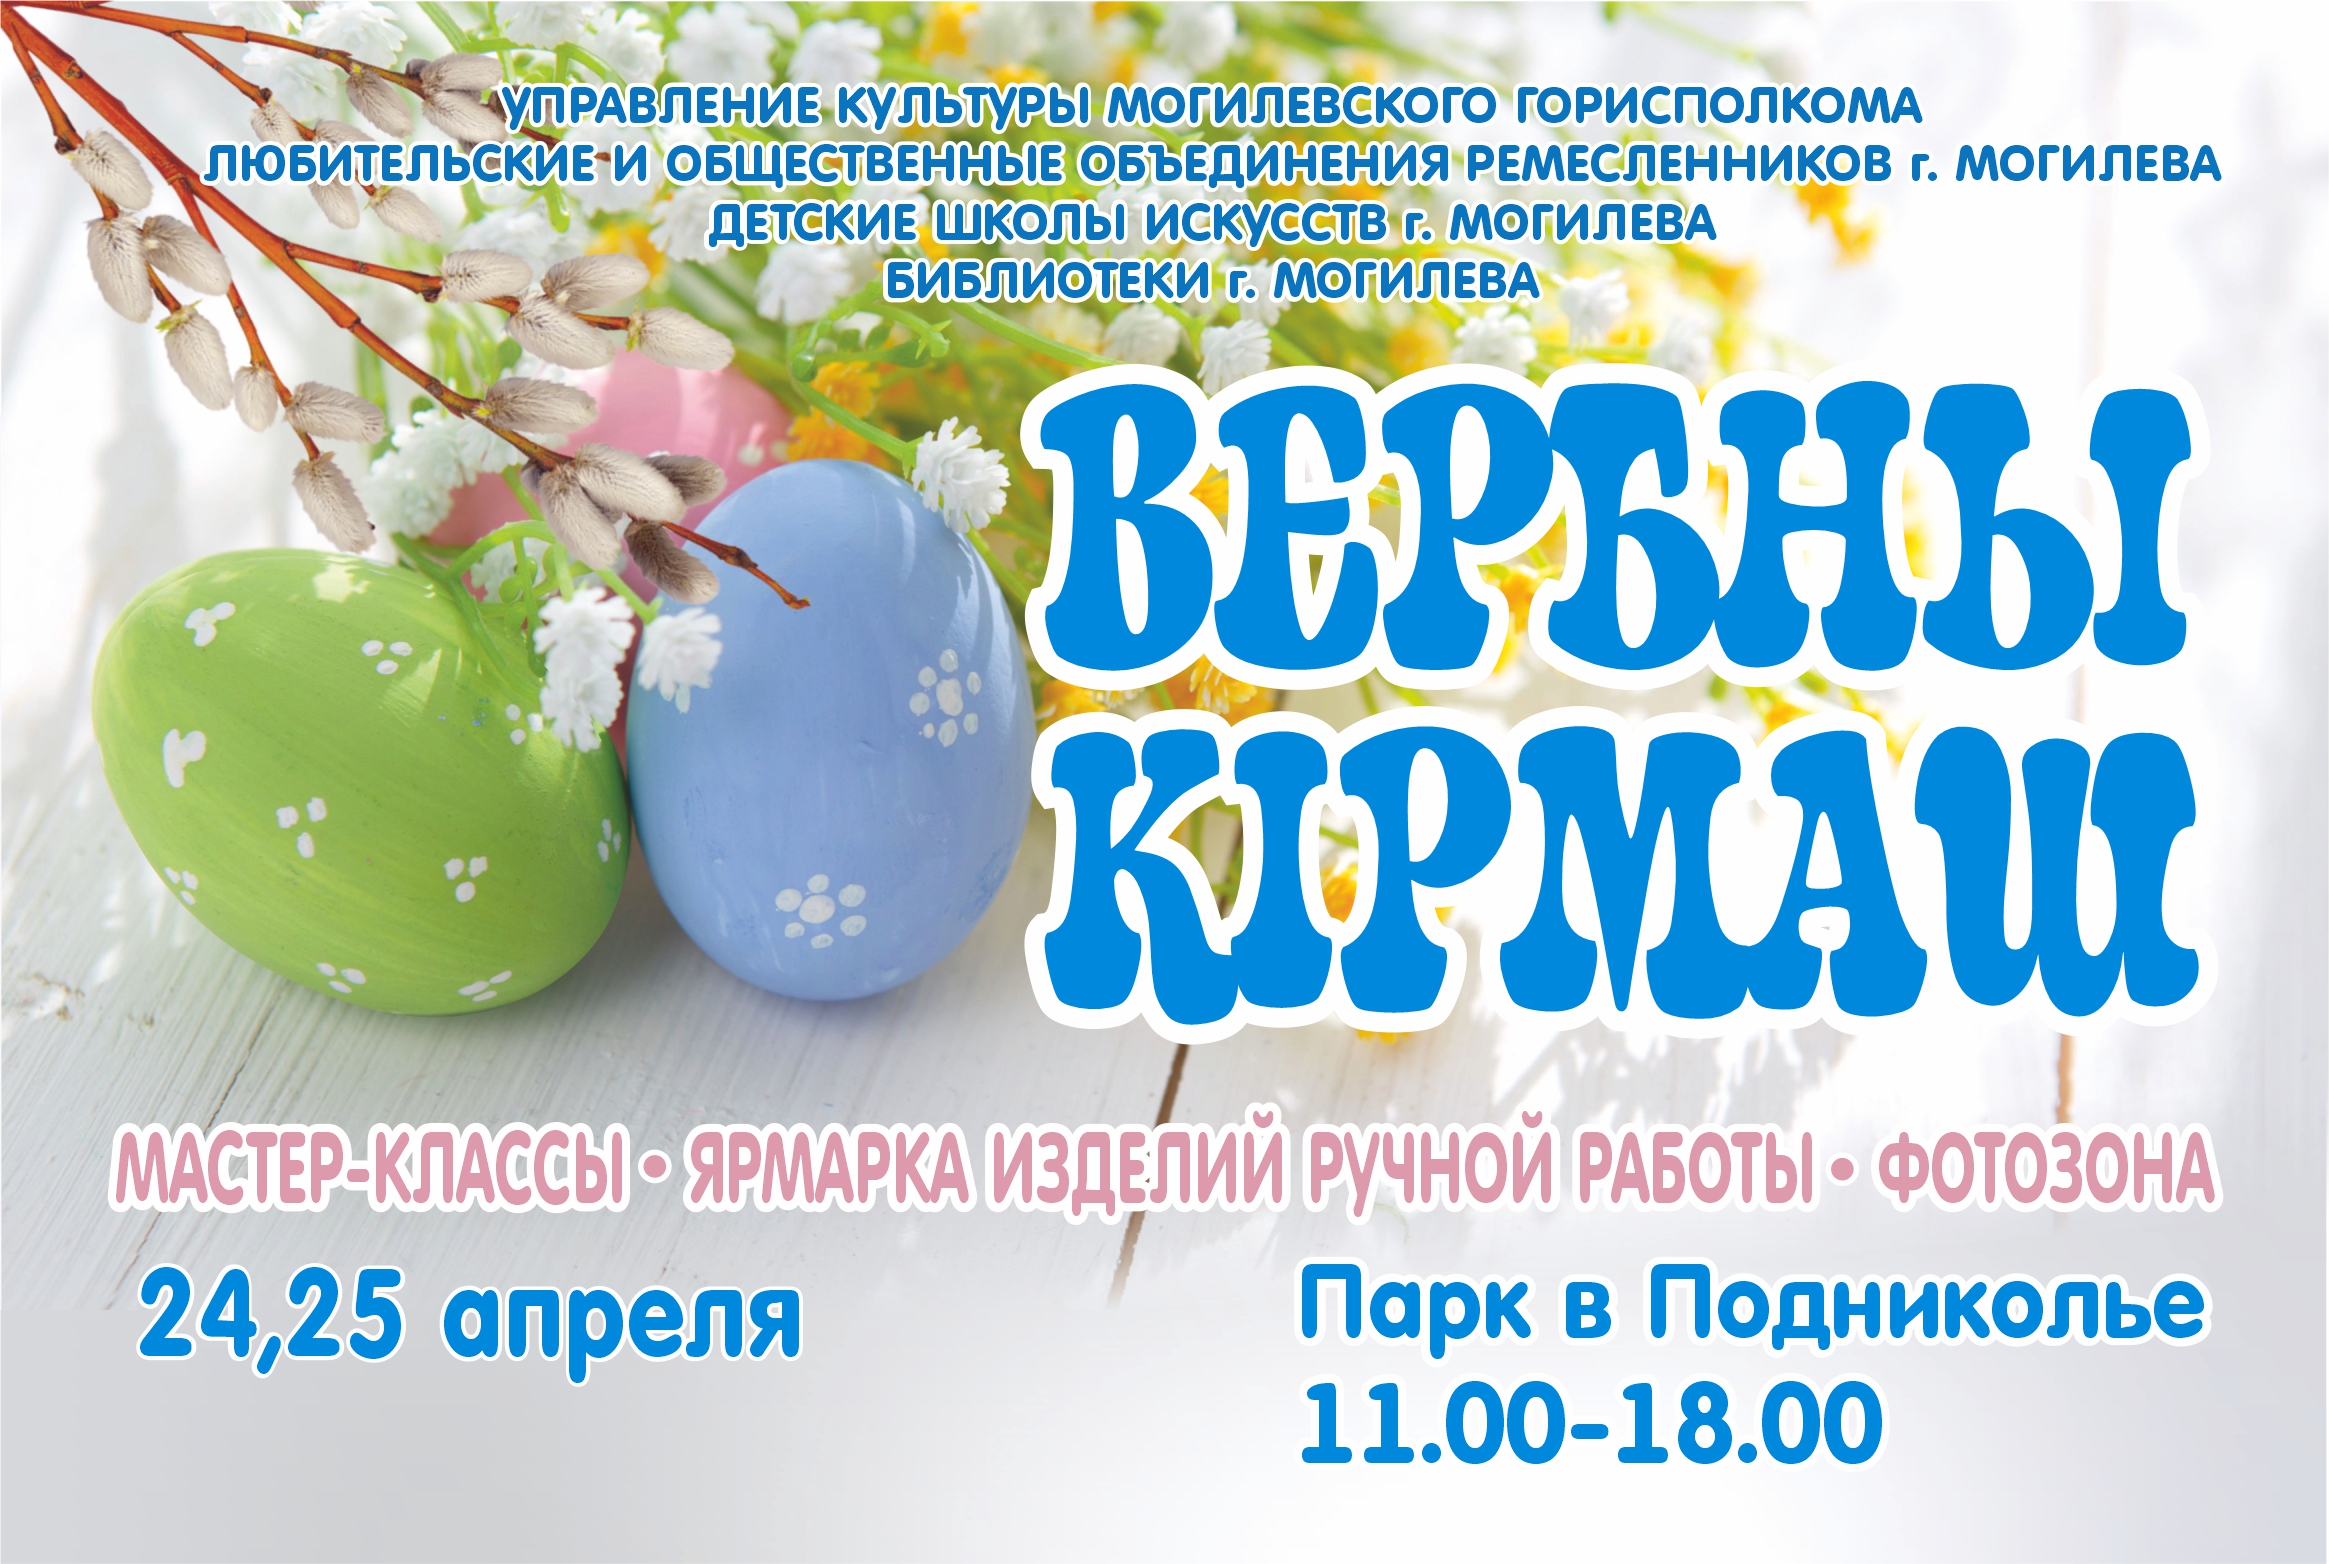 Выставка-продажа «Вербны кірмаш» пройдет в Могилеве 24-25 апреля